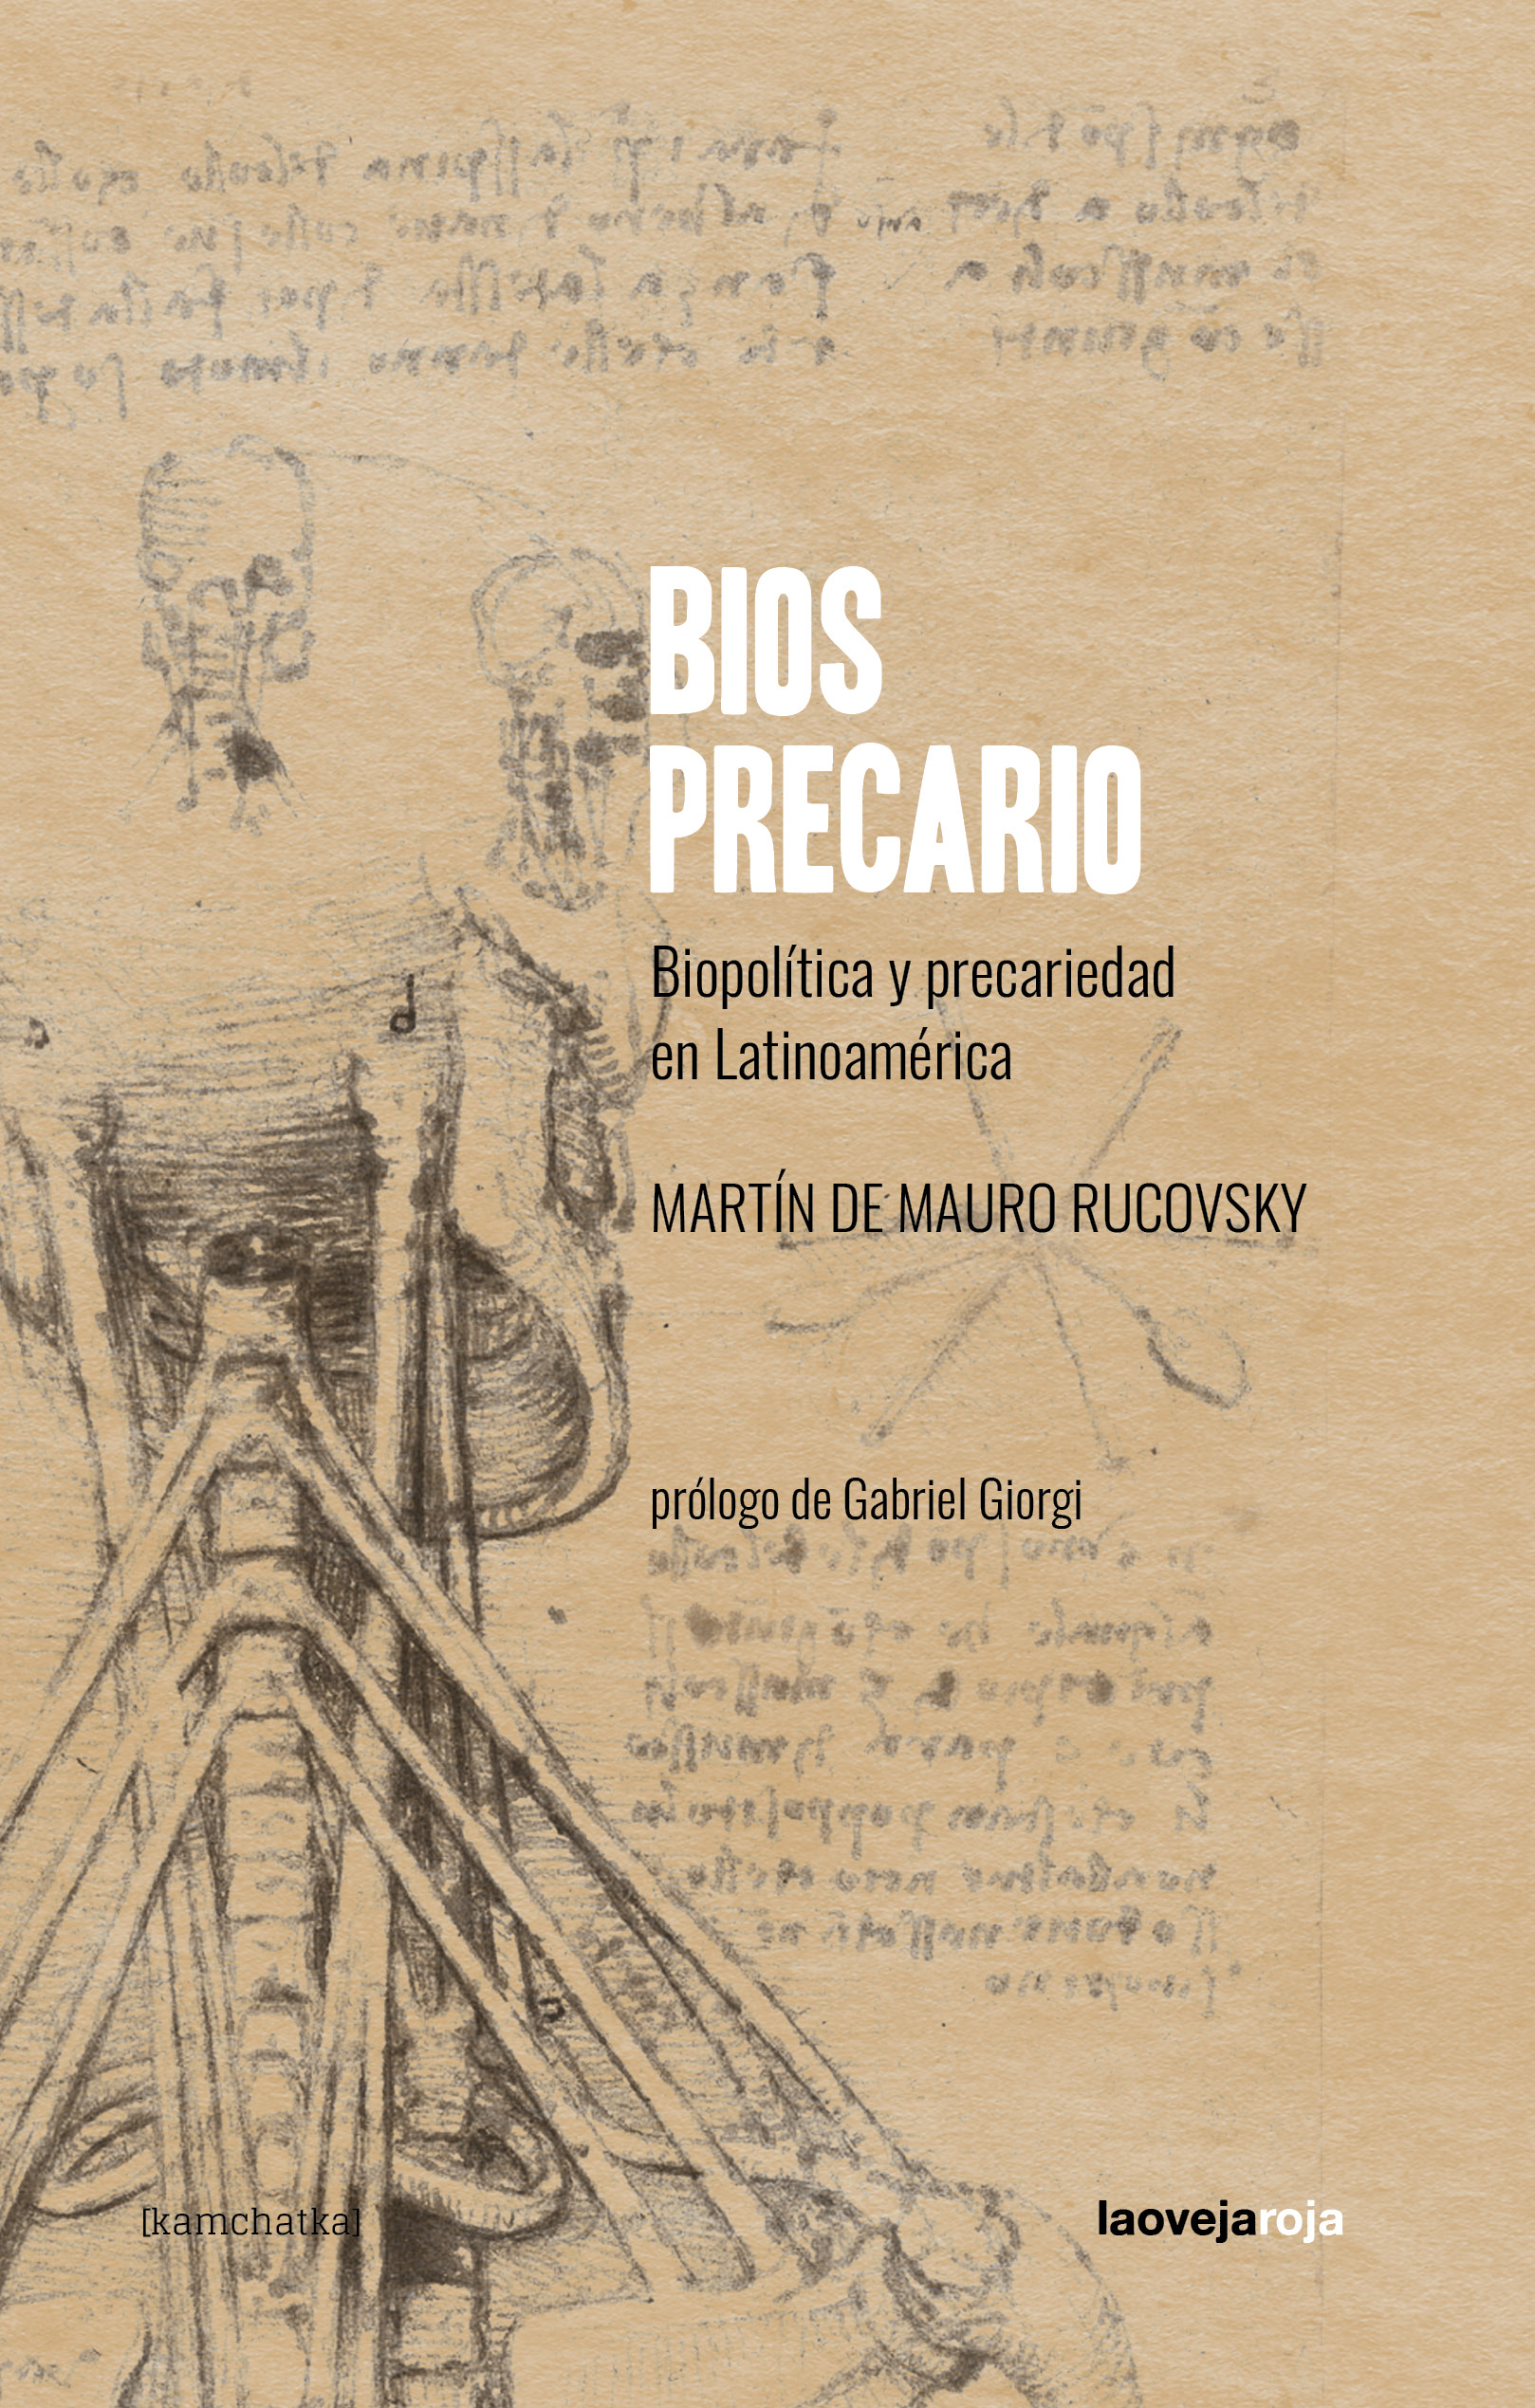 BIOS PRECARIO - Martín De Mauro Rucovsky